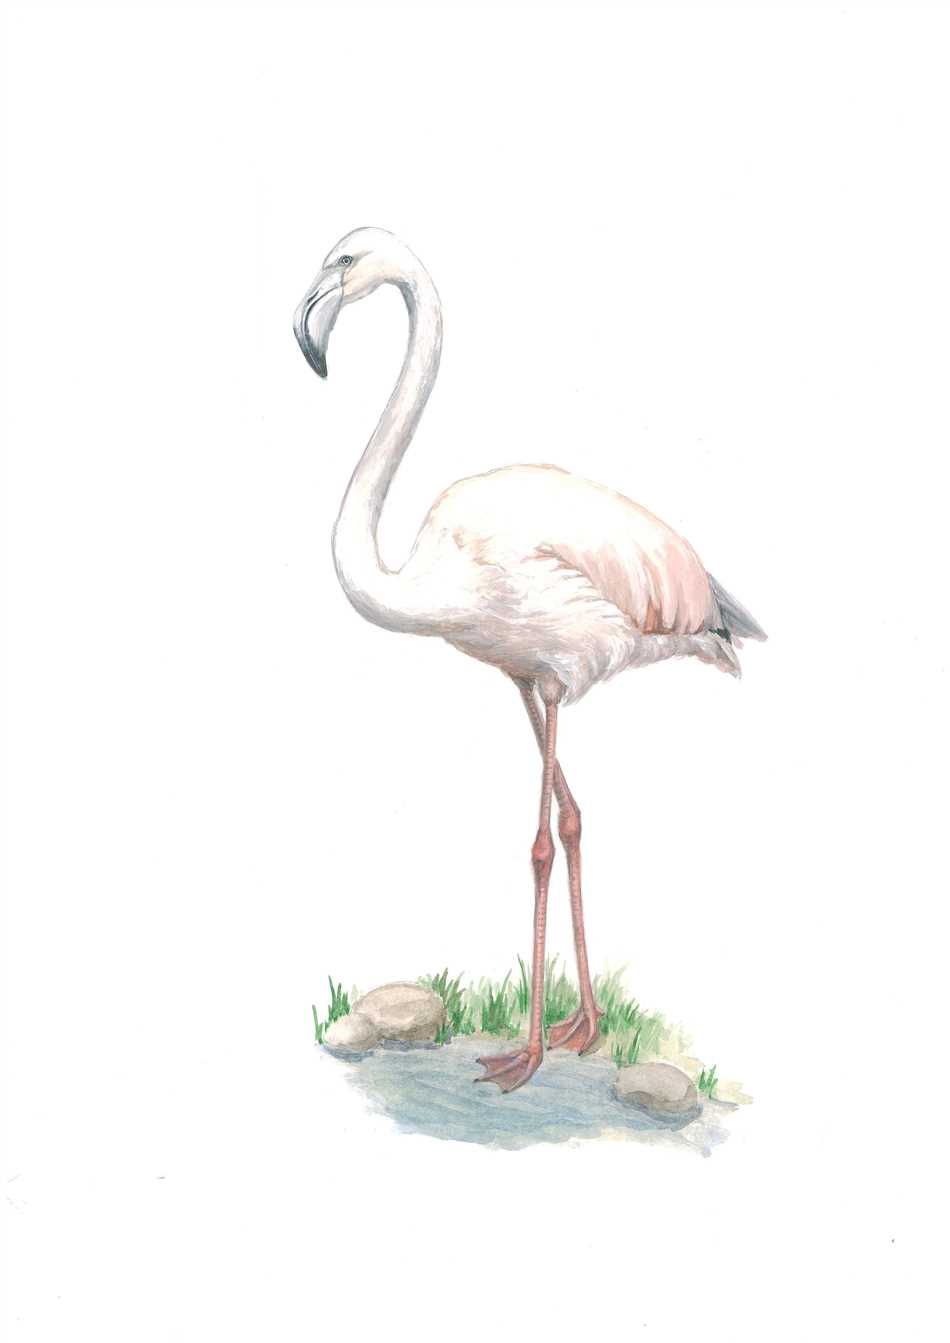 Основные причины занесения фламинго в Красную книгу